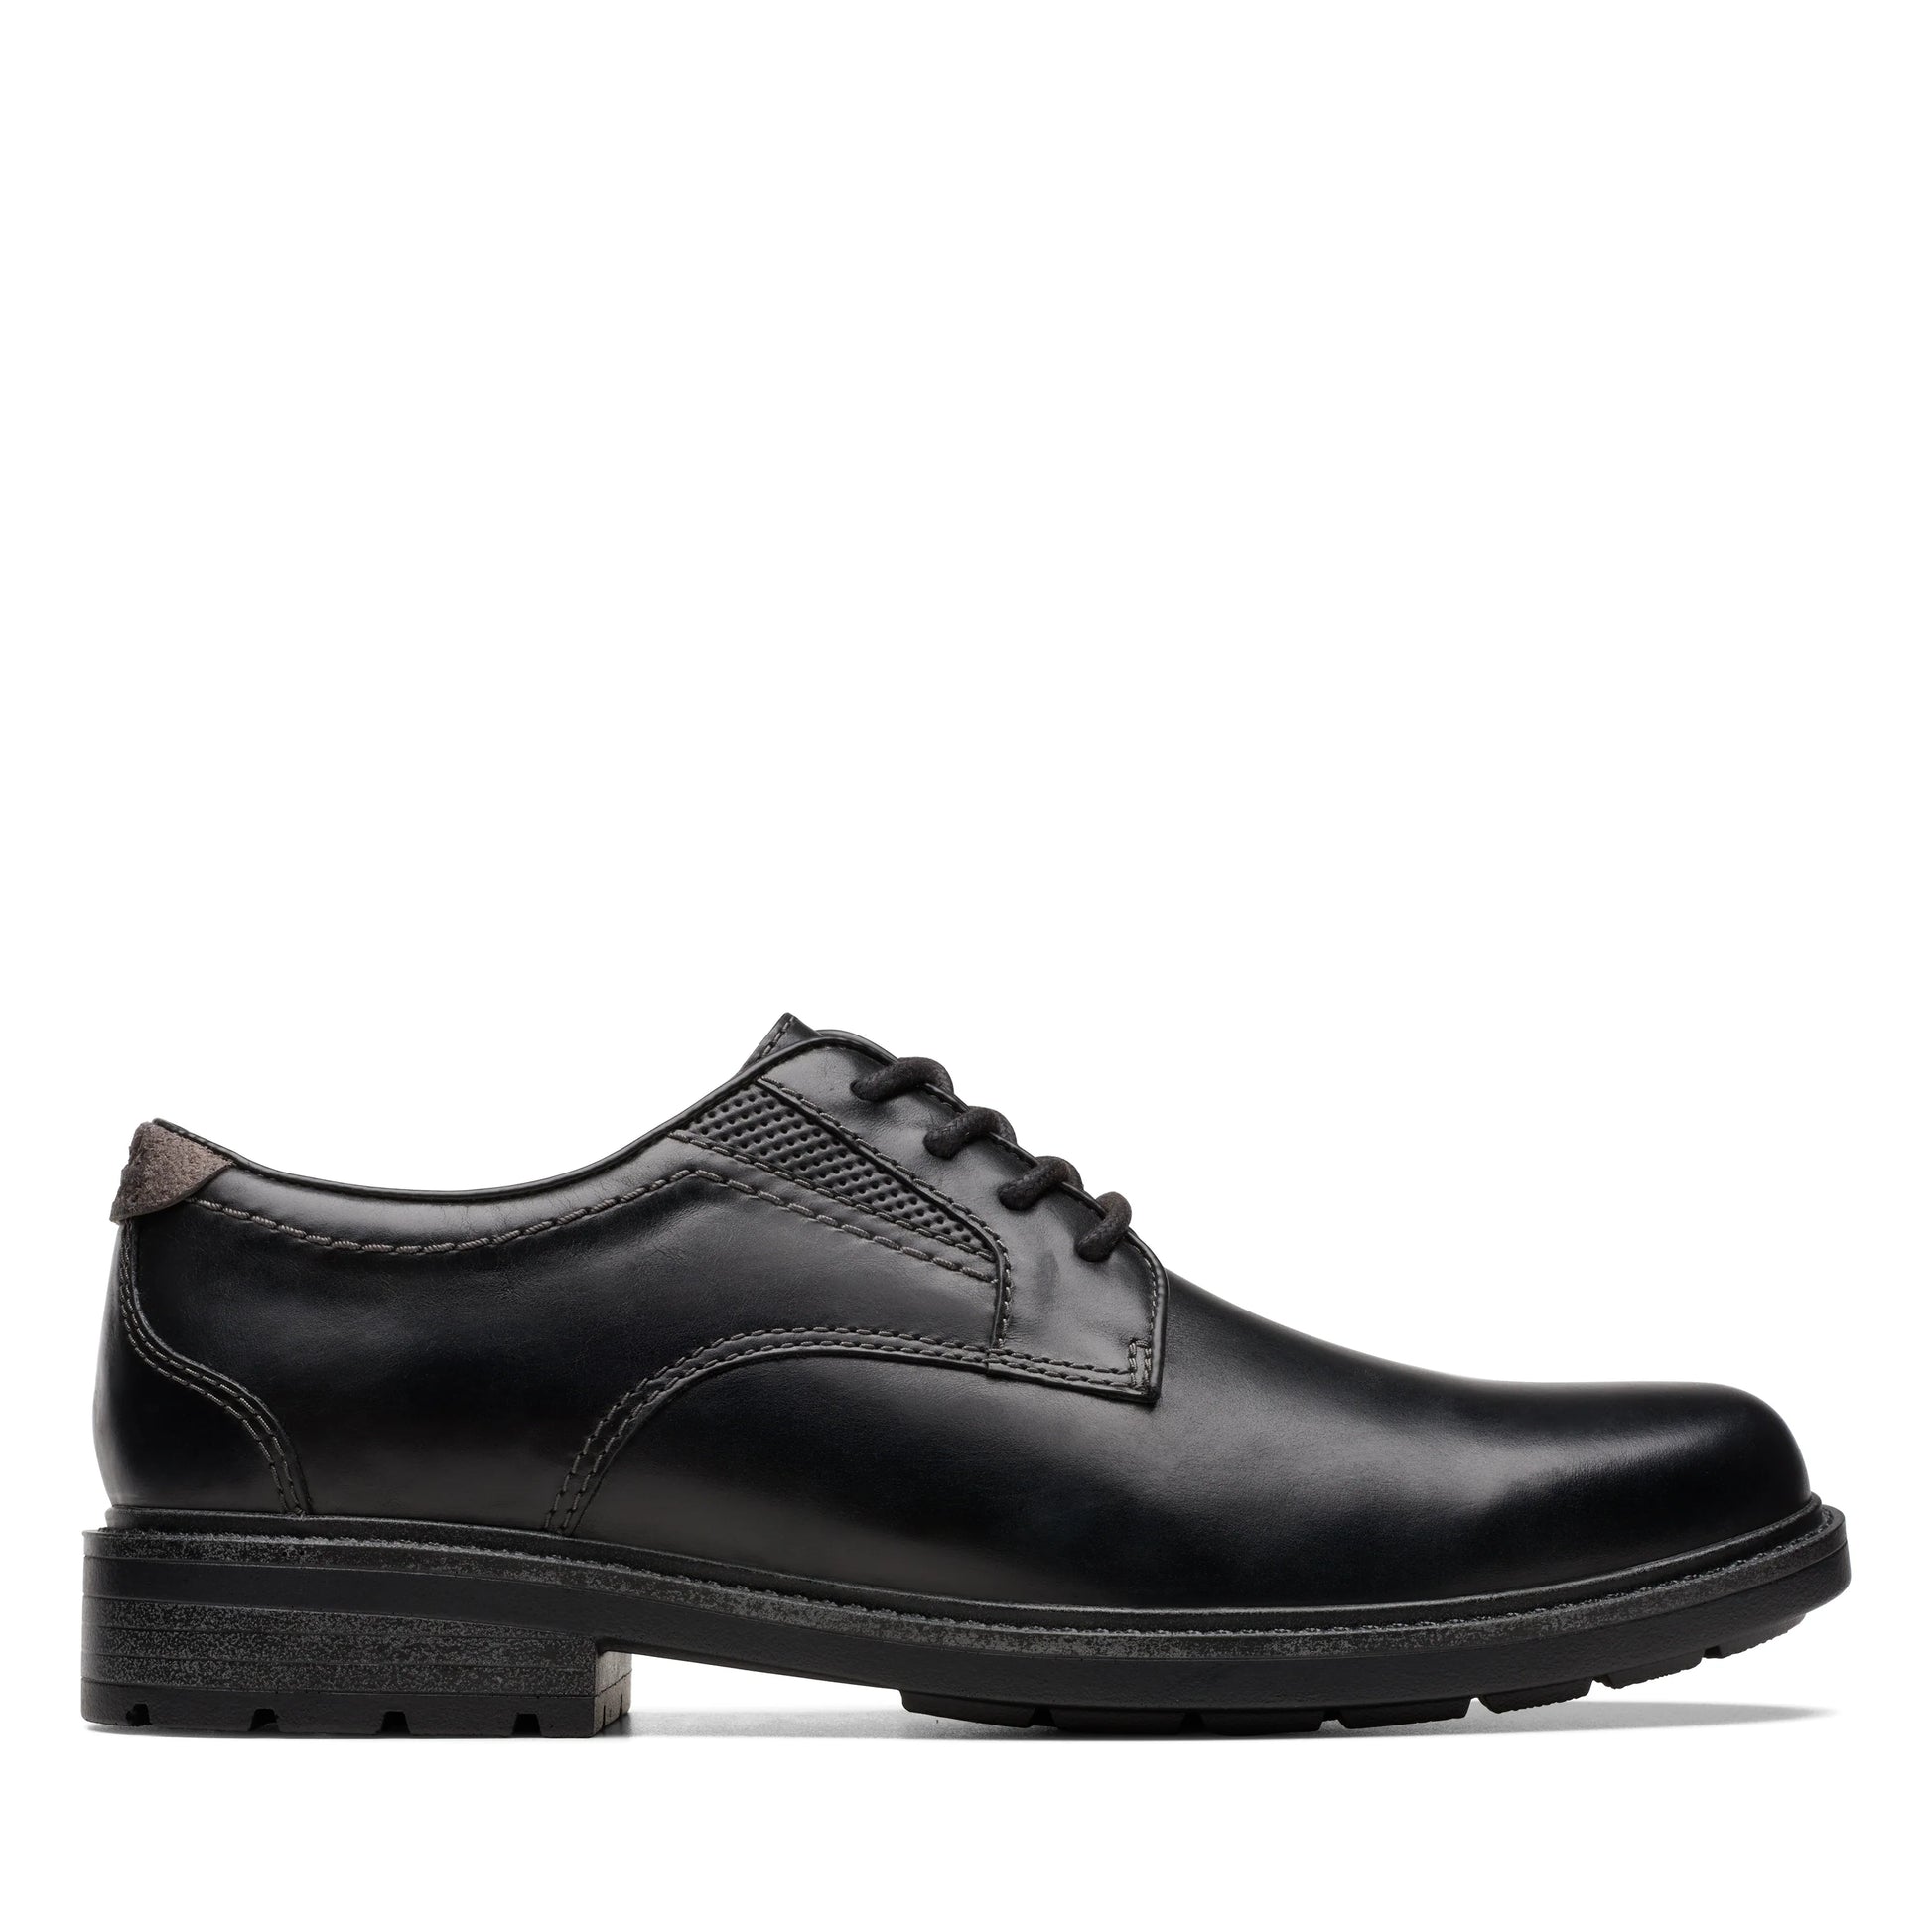 zapatos derby de la marca clarks modelo un shire low black leather para hombre en color negro